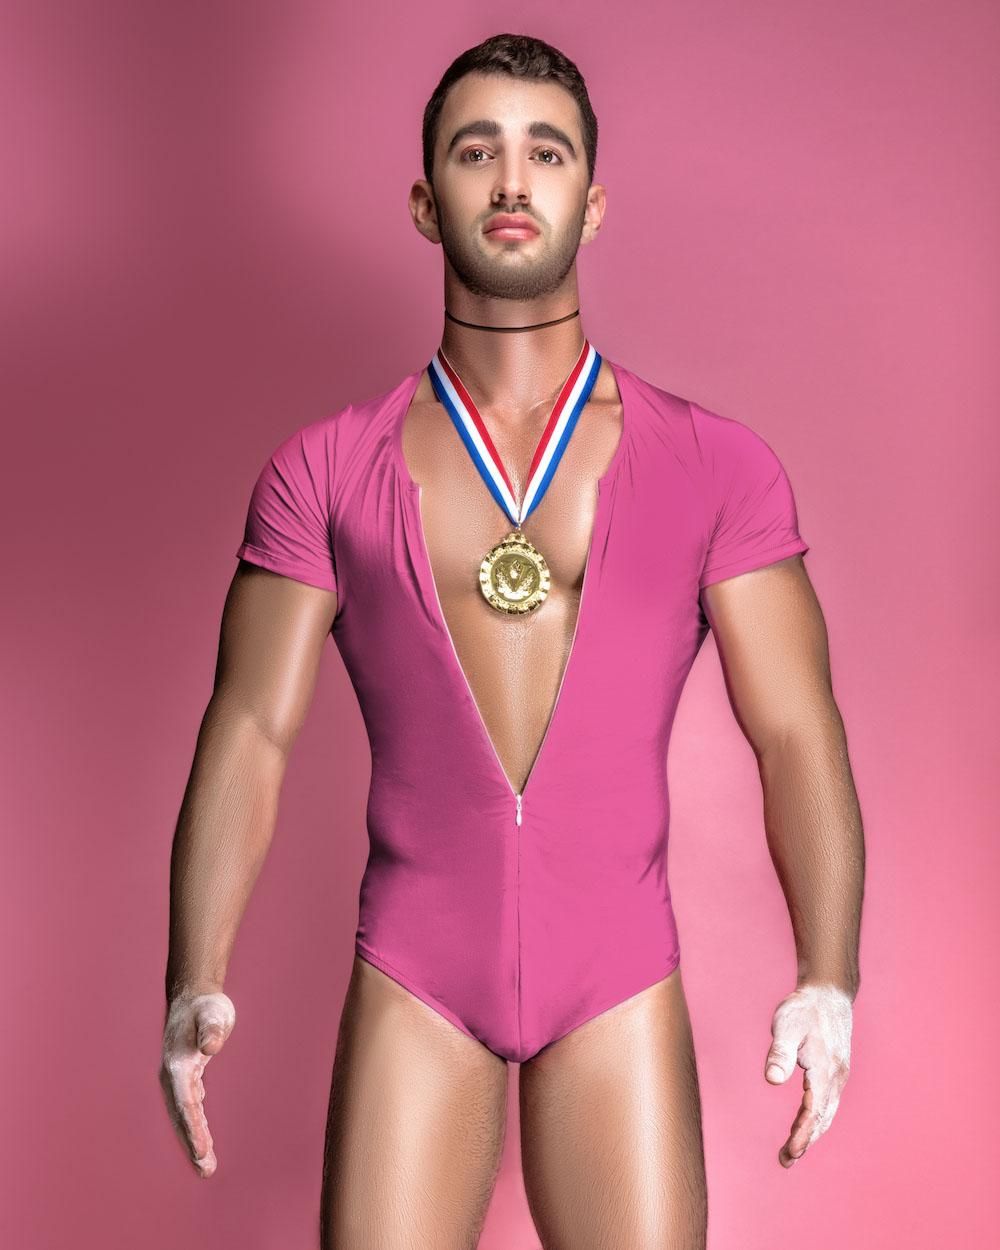 Olympic Gymnast Ken